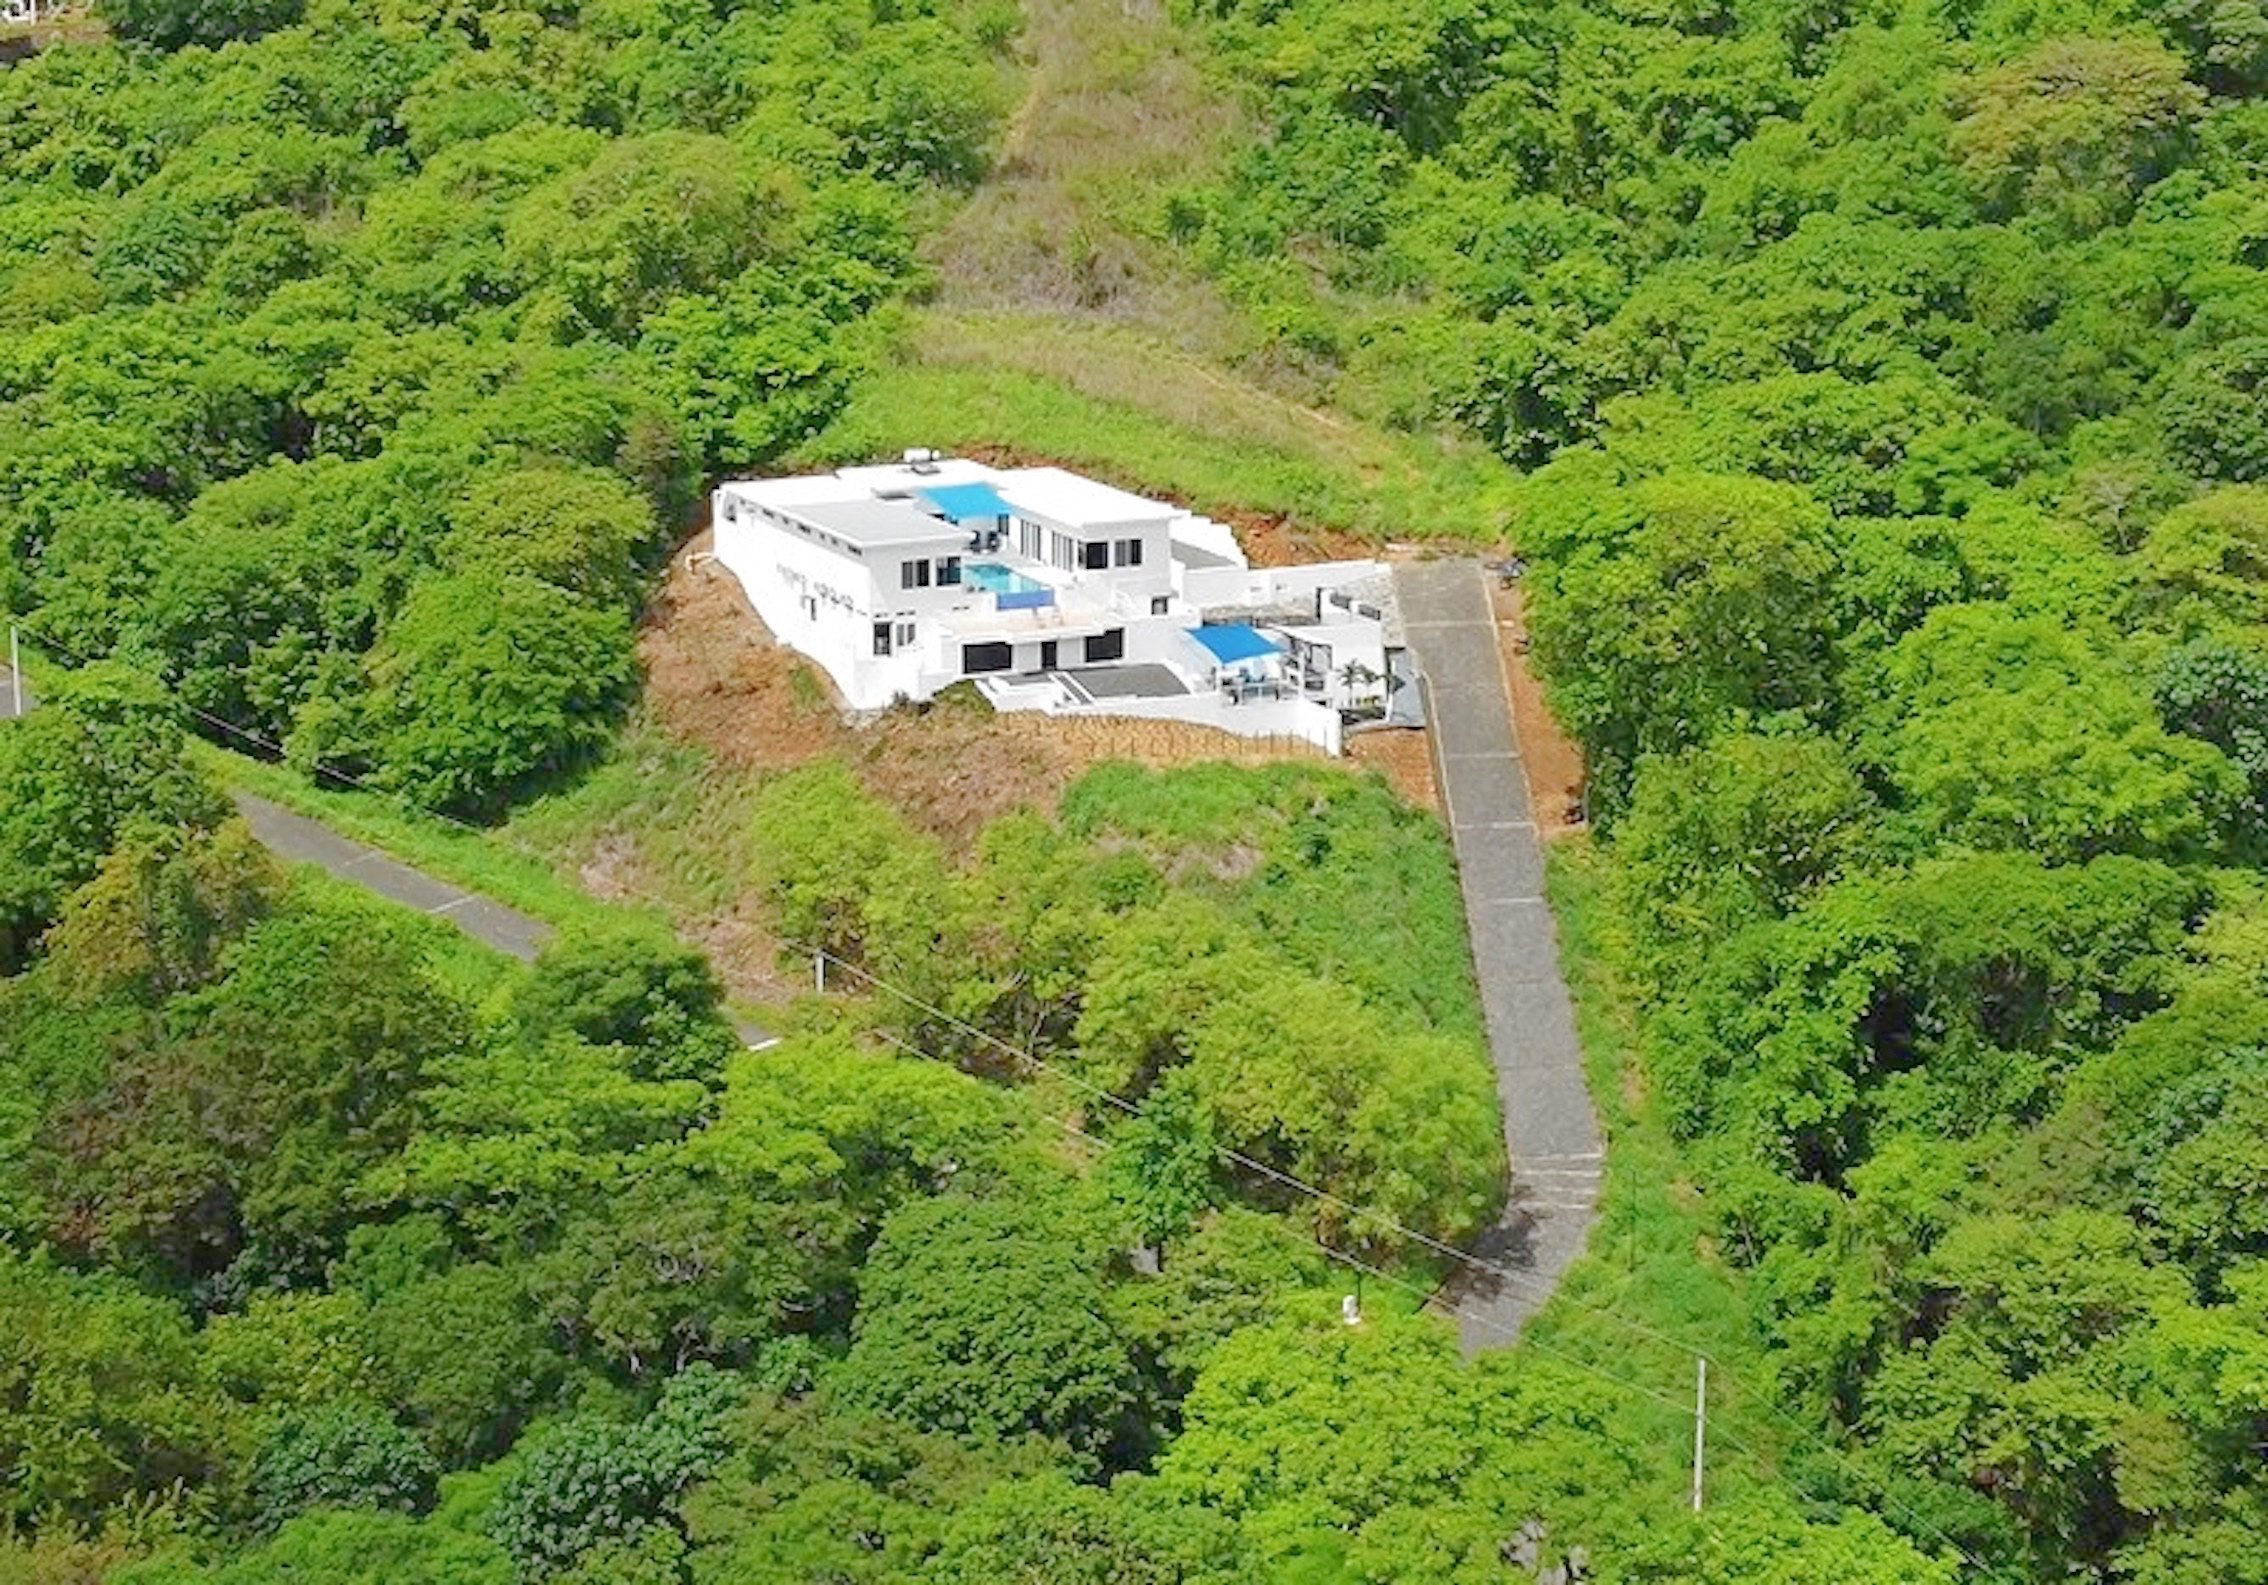 Home For Sale San Juan Del Sur Nicaragua Real Estate 5.jpg